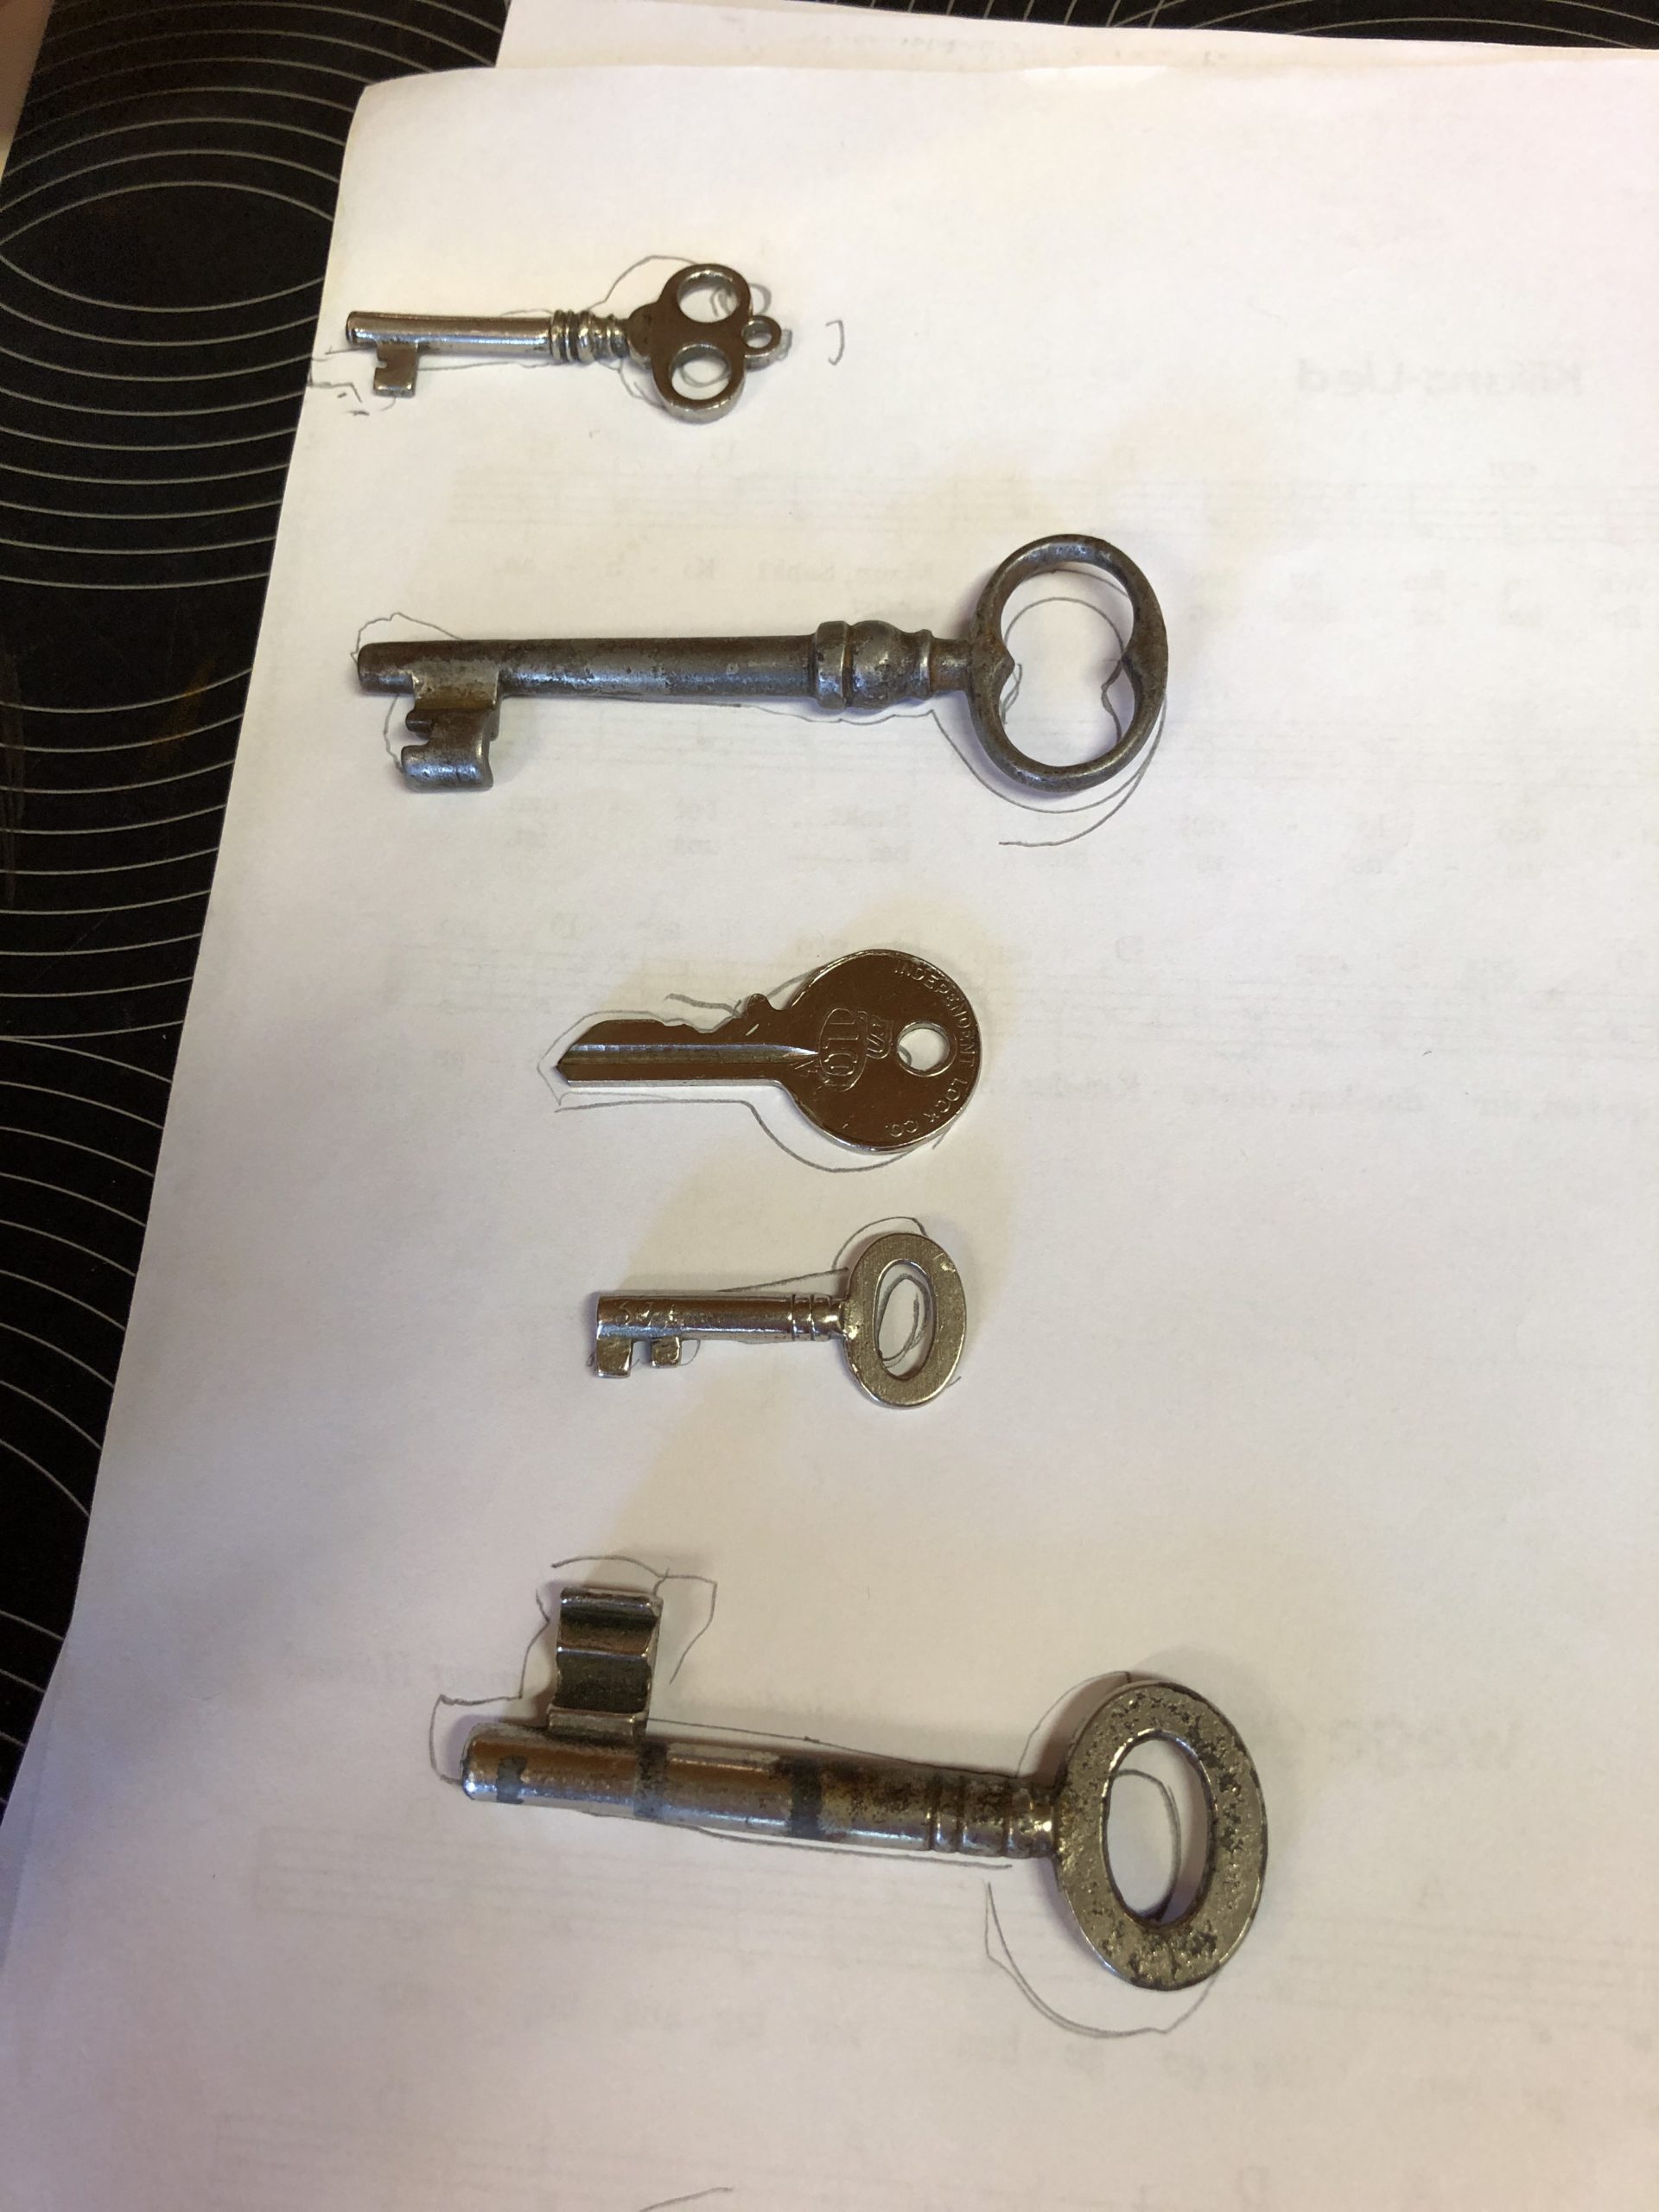 Bild zum Schritt 5 für das Bastel- und DIY-Abenteuer für Kinder: 'Nun die „echten“ Schlüssel versuchen zu den gemalten Schlüsseln zuzuordnen!'